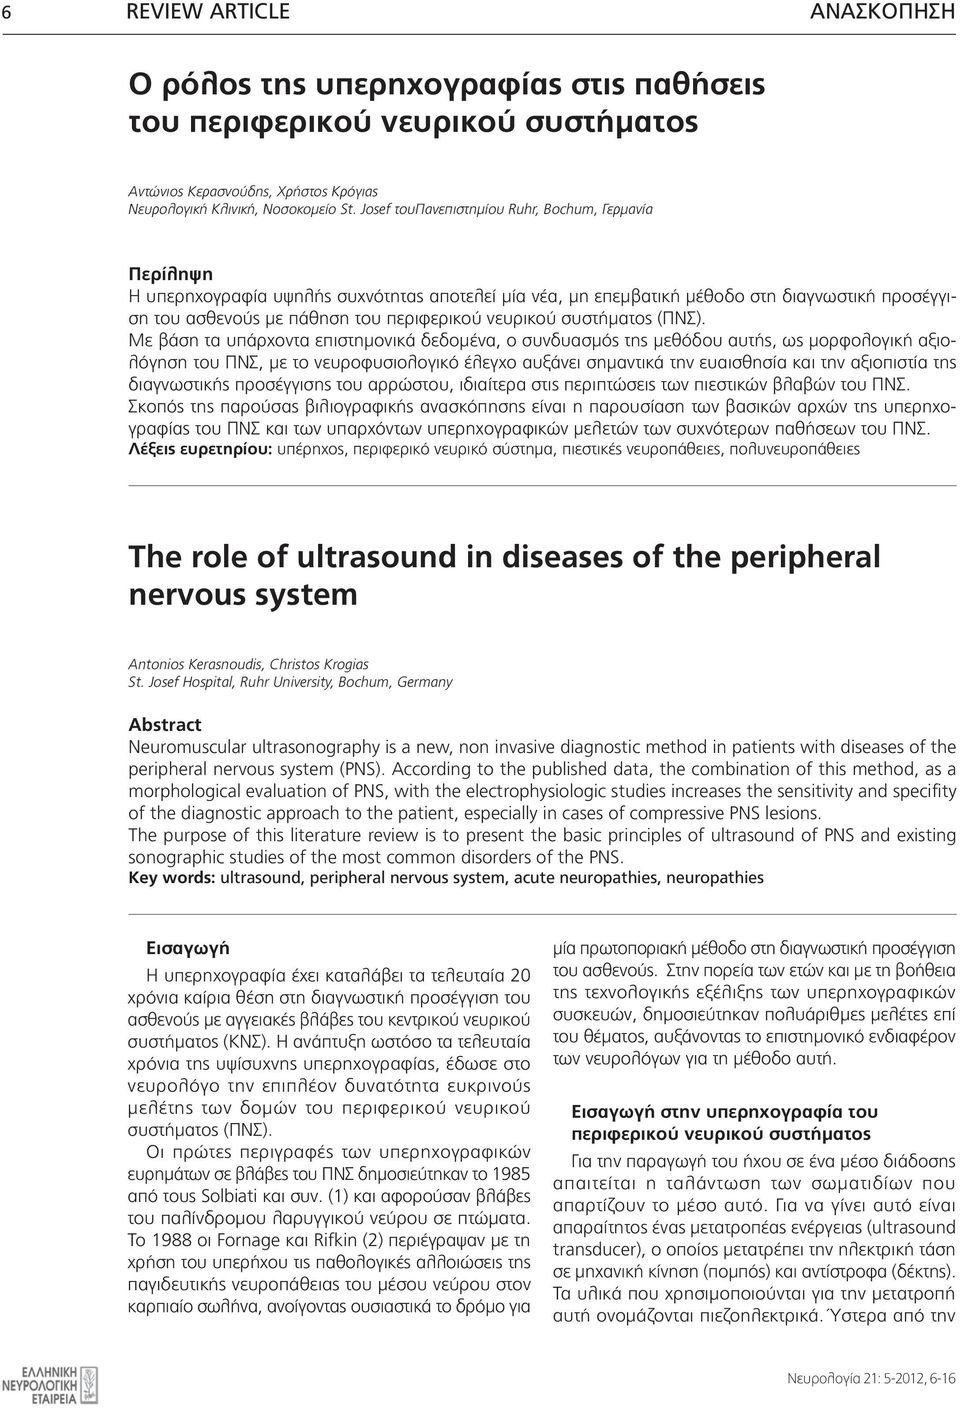 Ο ρόλος της υπερηχογραφίας στις παθήσεις του περιφερικού νευρικού  συστήματος. The role of ultrasound in diseases of the peripheral nervous  system - PDF Free Download